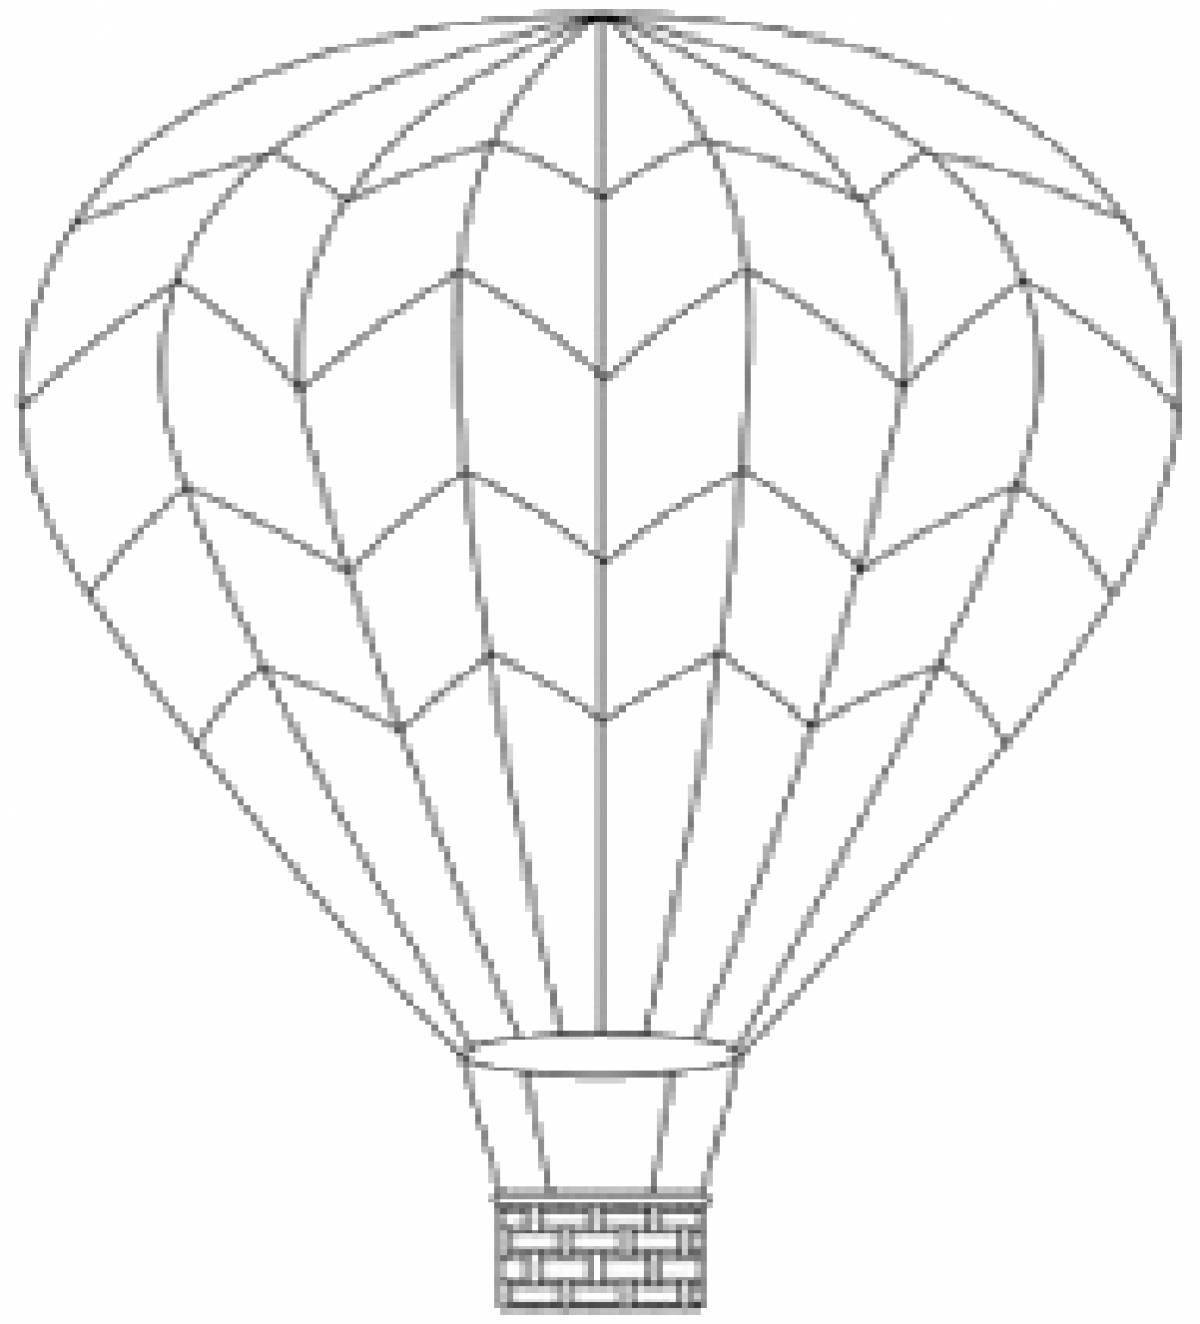 Стоковые фотографии по запросу Воздушный шар раскраска